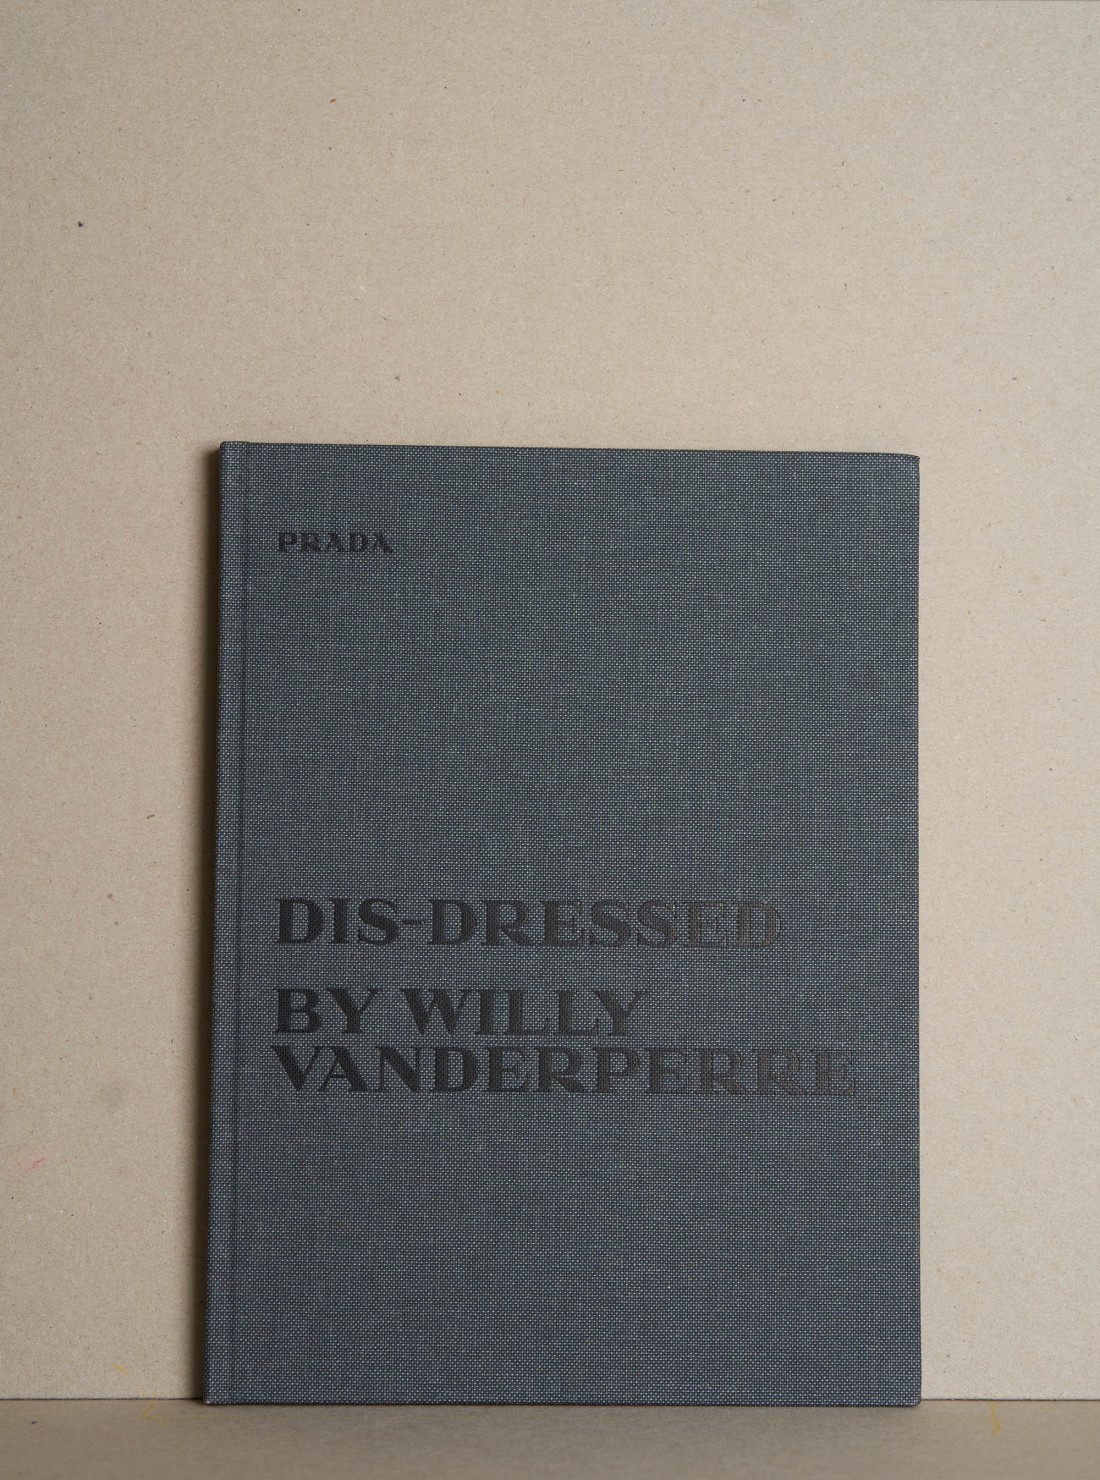 Prada Dis-dressed Redux by Willy...